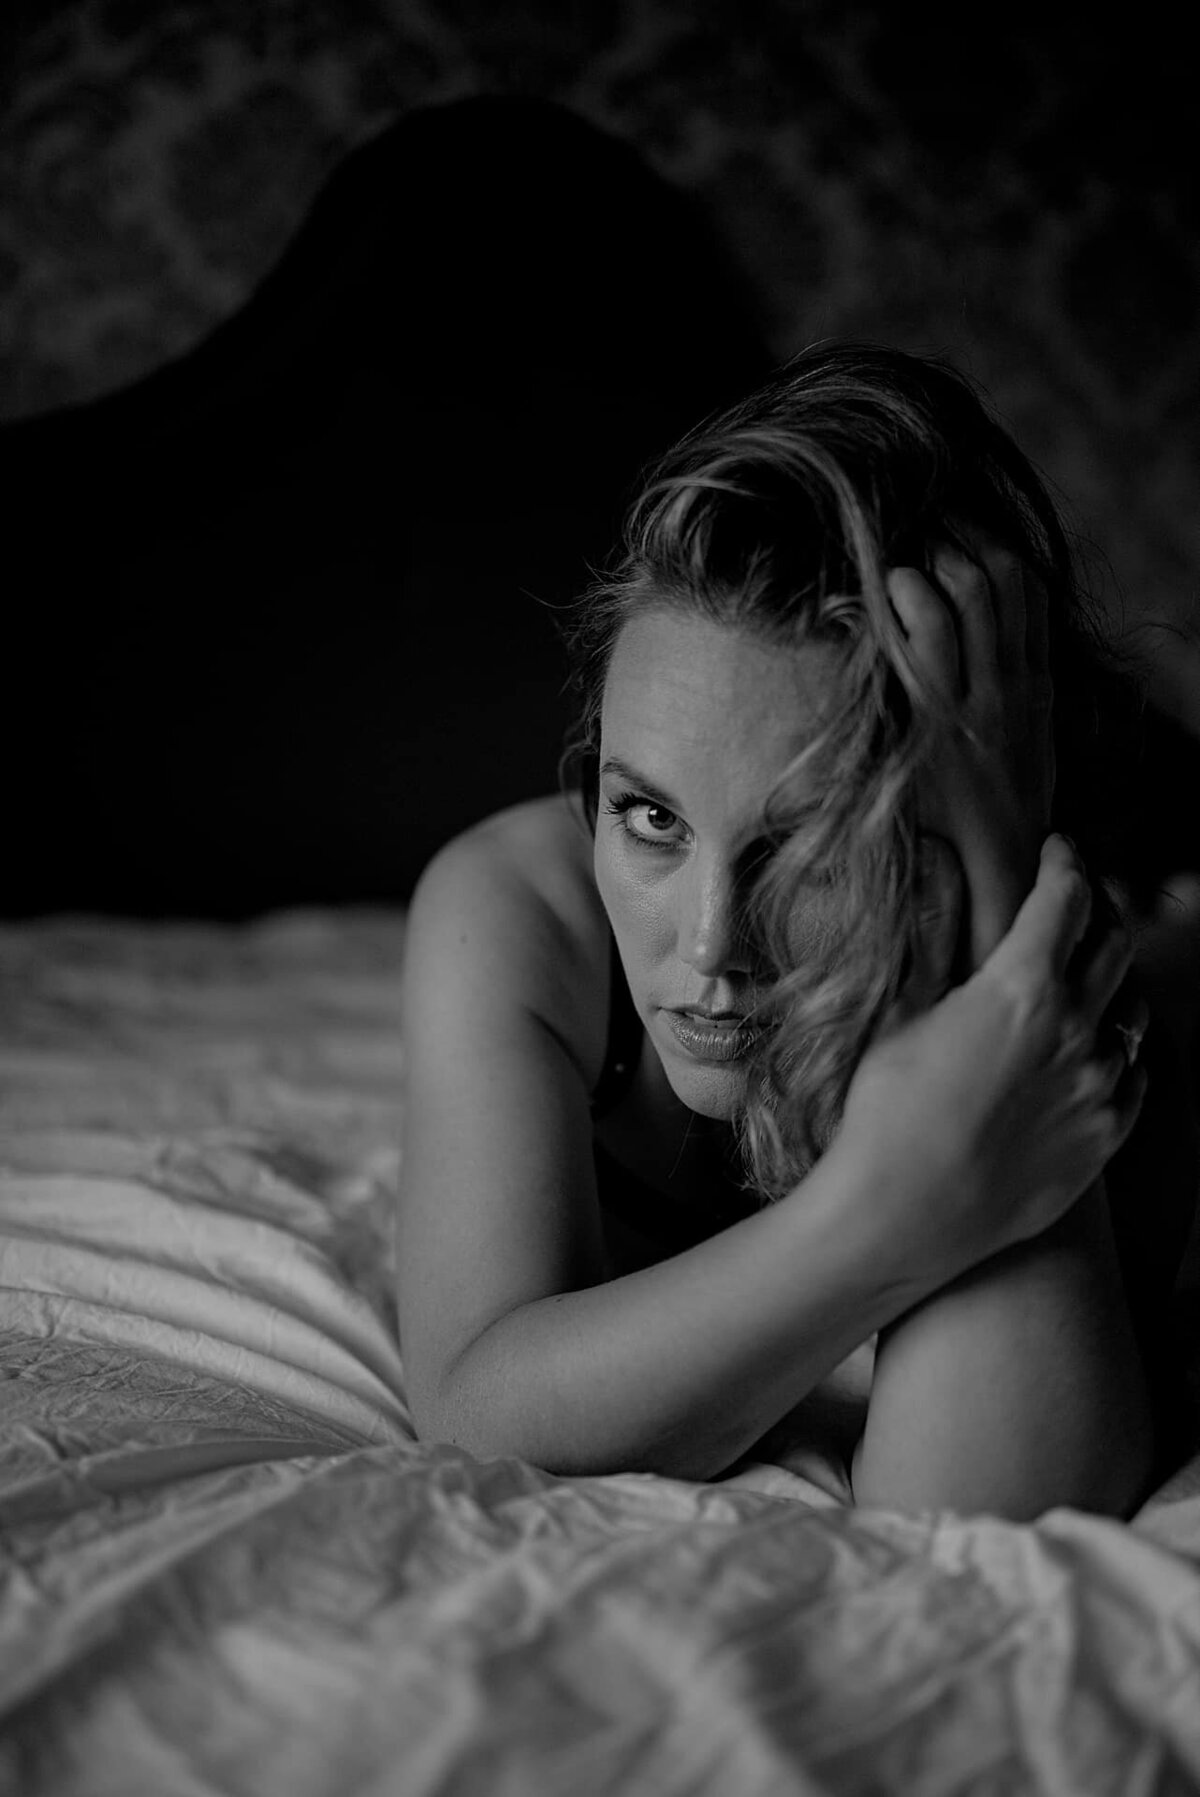 Under boudoirfotografering i Oslo ligger en kvinne på senga støtter hodet.